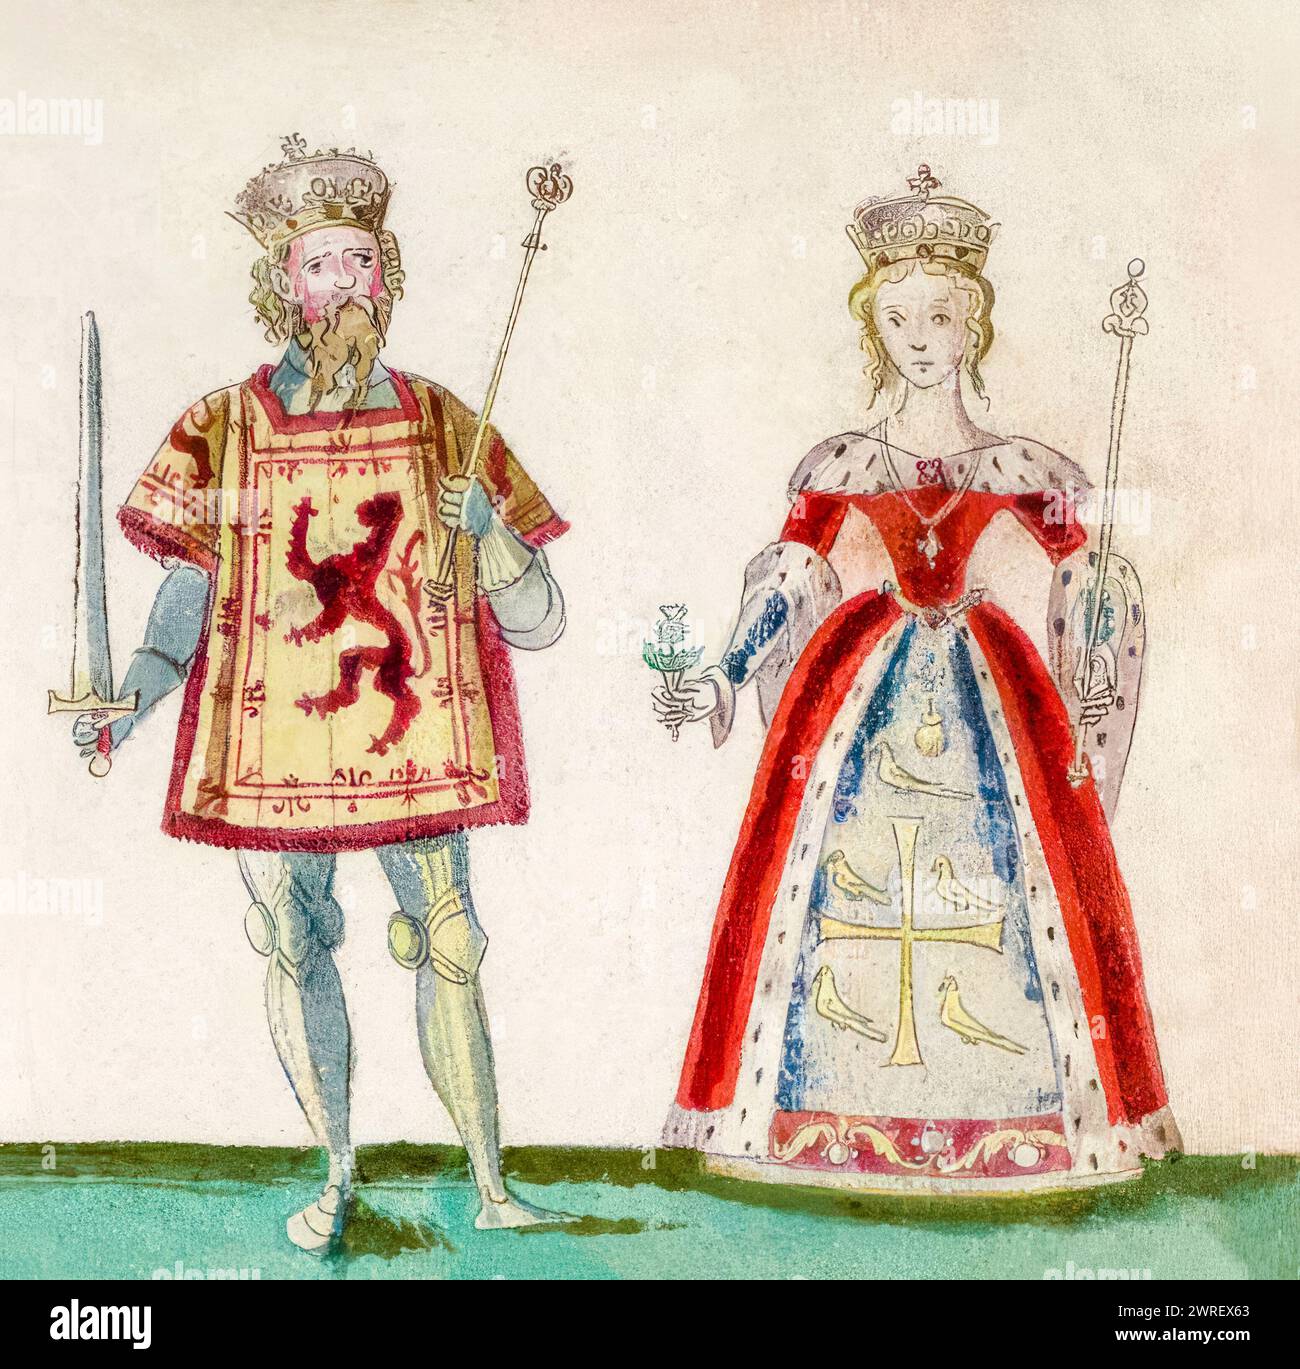 Malcolm III. Von Schottland (ca. 1031–1093), König von Schottland 1058-1093 und seine Frau Saint Margaret von Schottland (ca. 1045–1093), auch bekannt als Margaret von Wessex. Englische Prinzessin und Königin Consort von Schottland 1070–1093, illustriertes Portraitgemälde, ca. 1562 Stockfoto